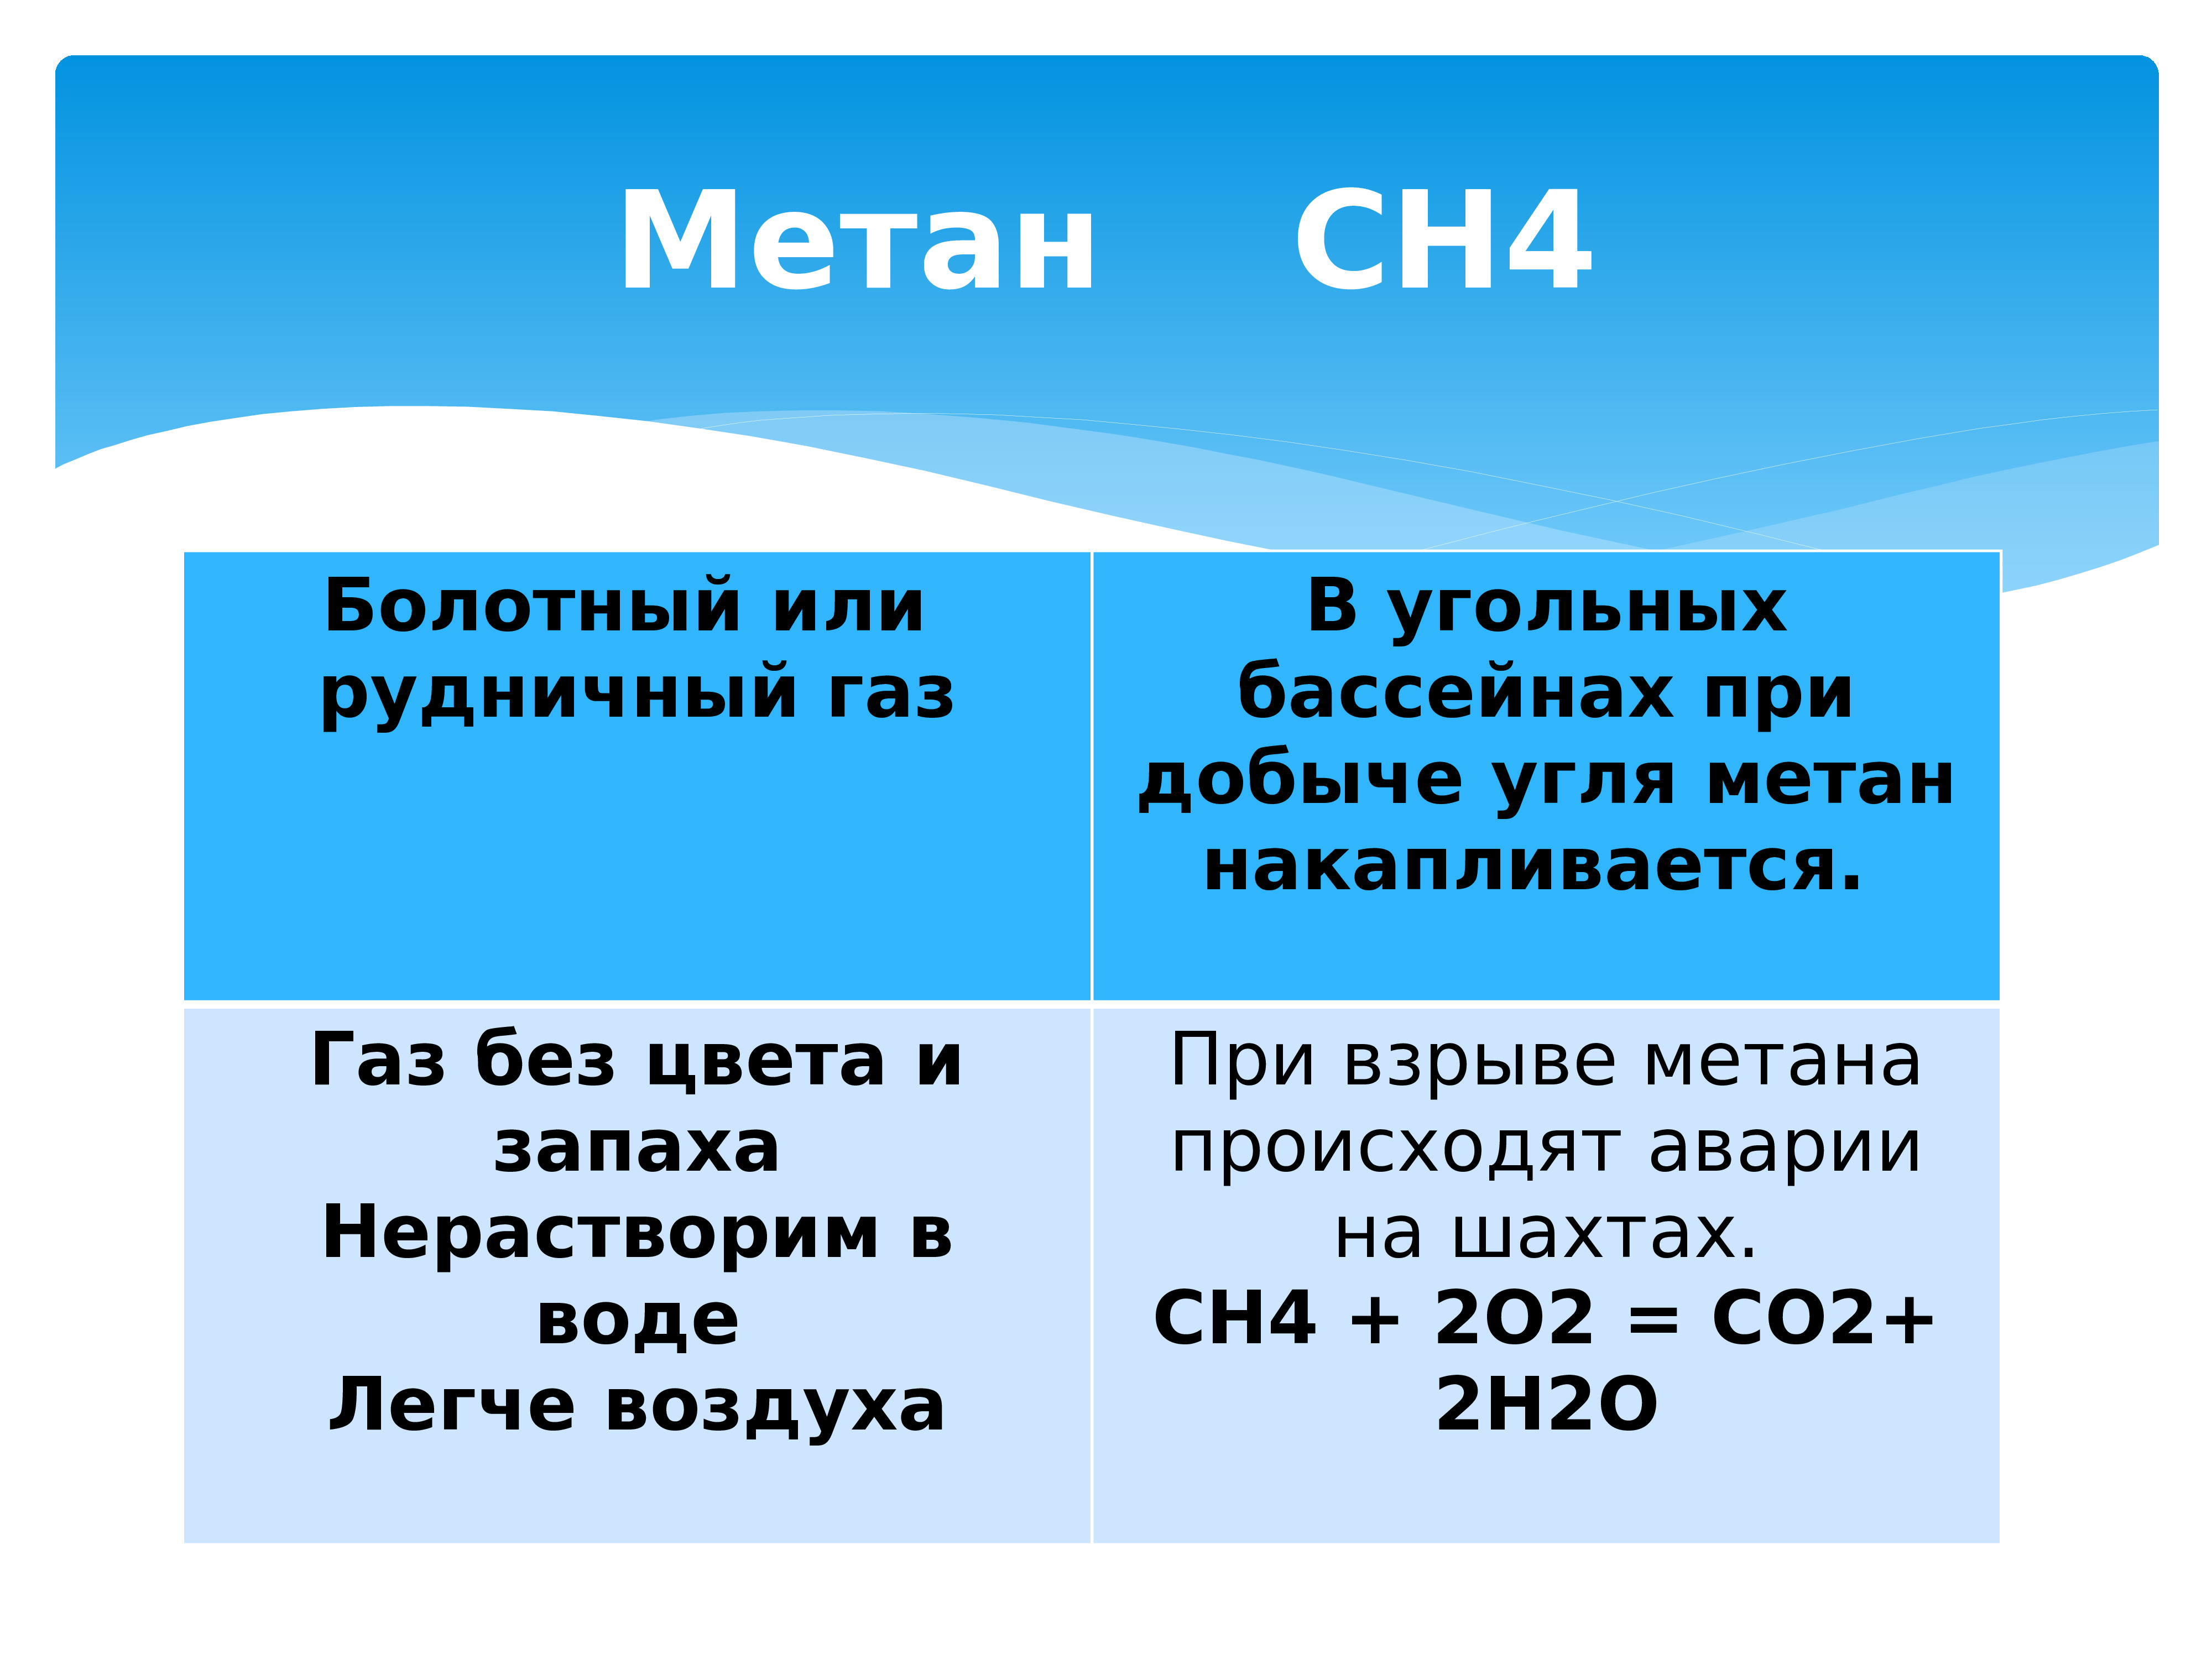 Массовая углерода в метане. Метан. Метан ch4. Углерод в метан. Метан болотный ГАЗ.